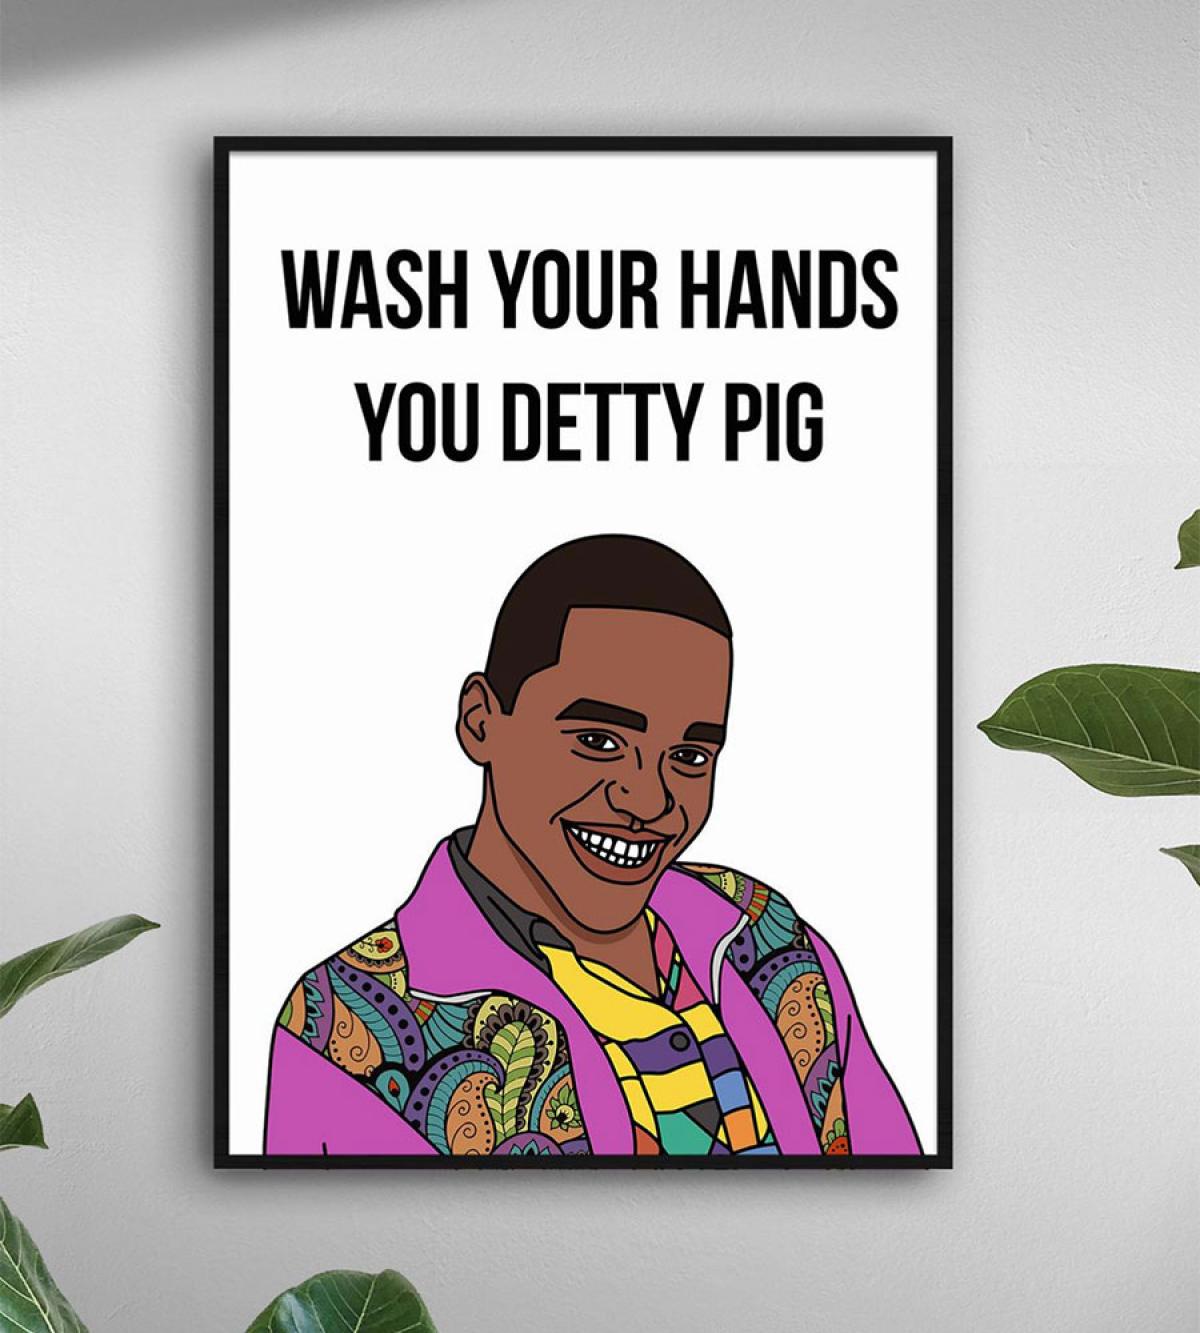 Voor de fans van 'Sex Education': Wash your hands you detty pig.